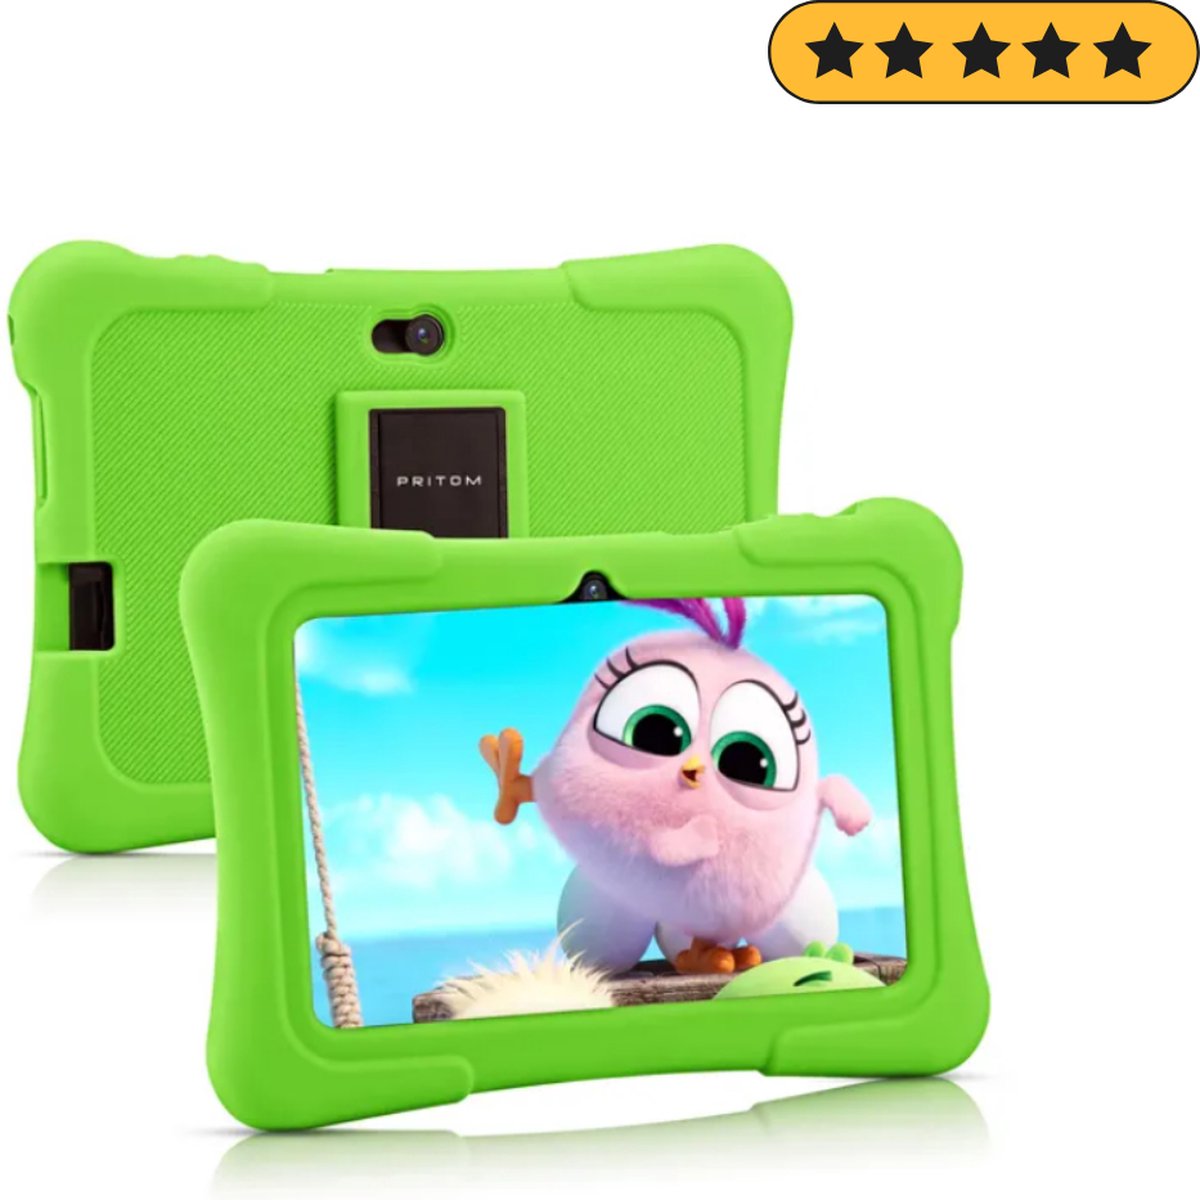 PRITOM Kindertablet – Tablet vanaf 3 jaar – Quad Core Processor - 7 inch Kids Tablet – Andriod 10 – 32 GB – WiFi – Bluetooth – Standaard Educatieve Software Geïnstaleerd – Ontspannend & Leerzaam – Groen